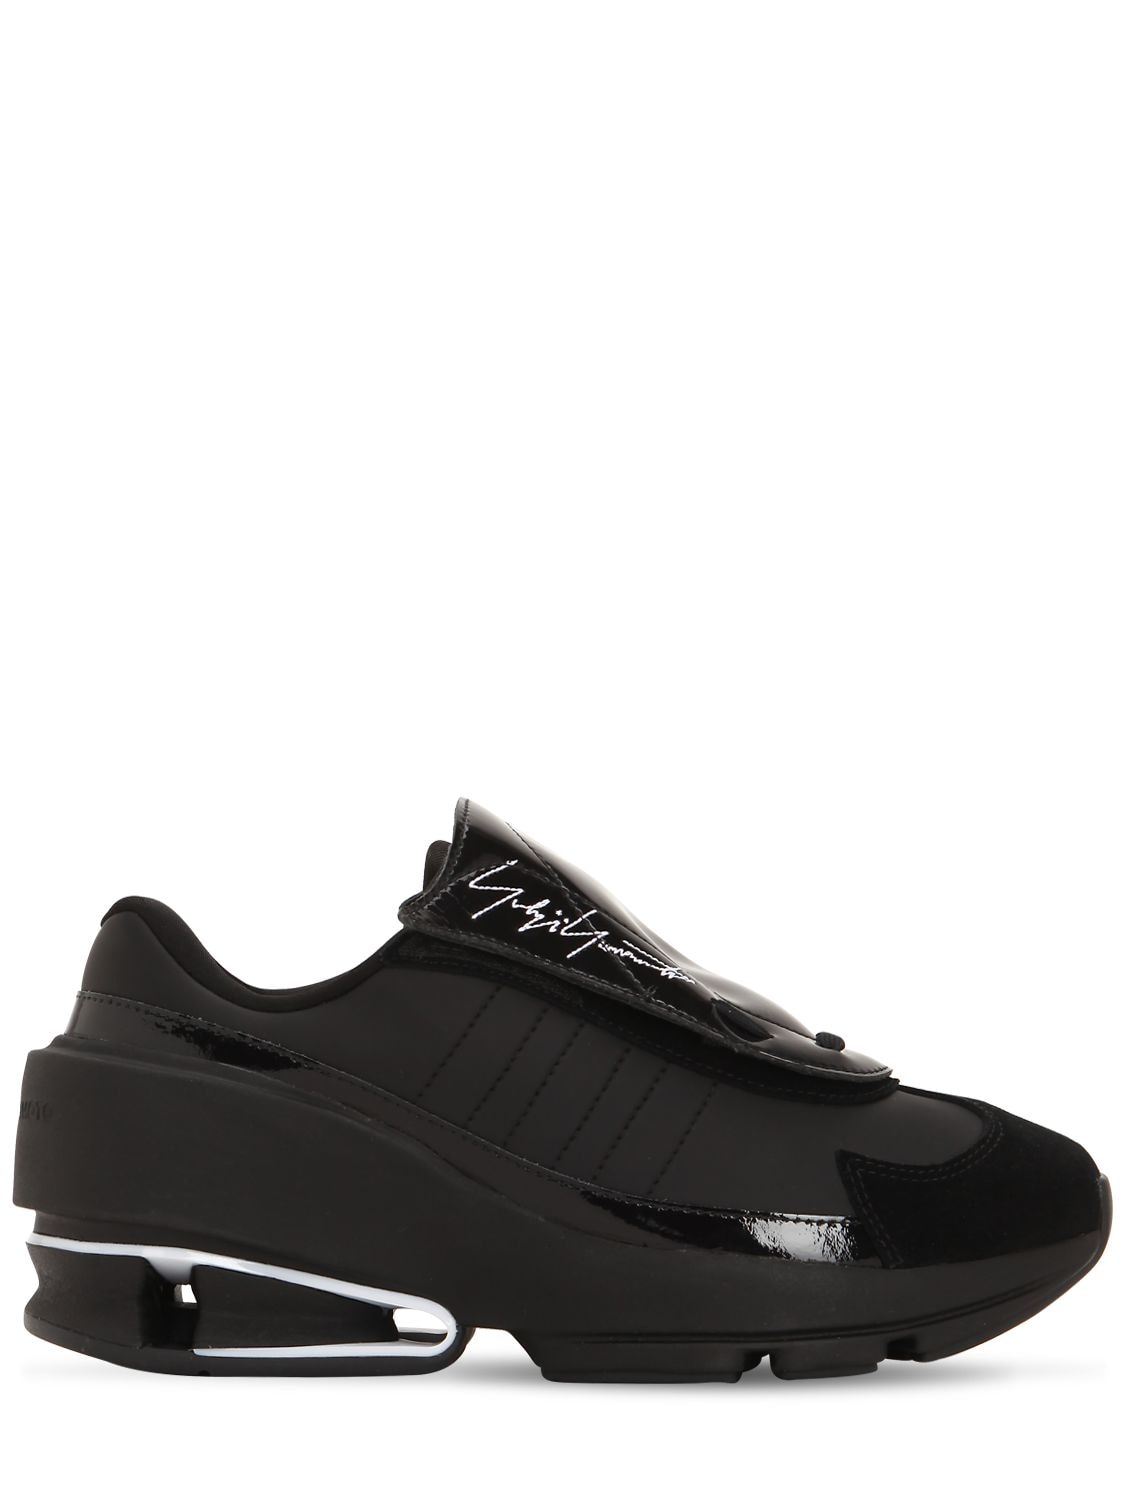 Y-3 Sukui Sneakers In Black